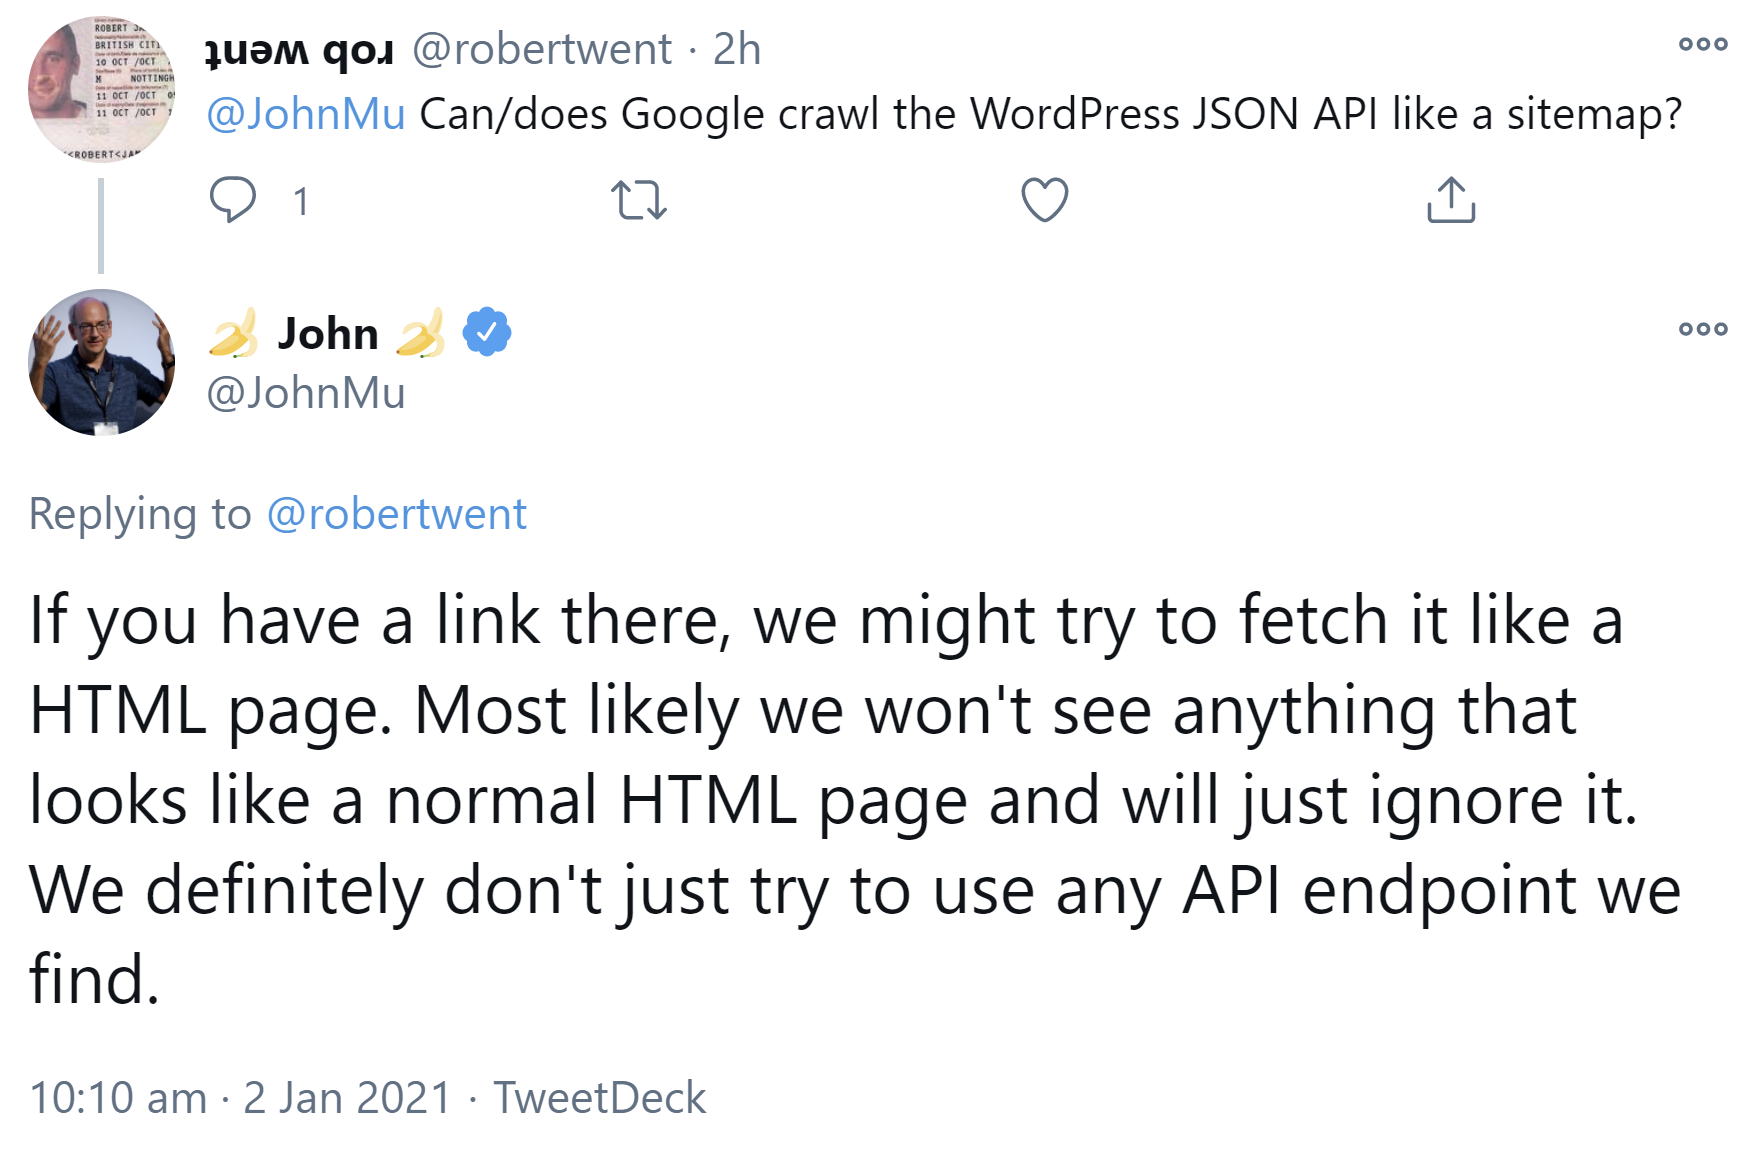 Google versucht nicht, jeden API-Endpunkt abzufragen